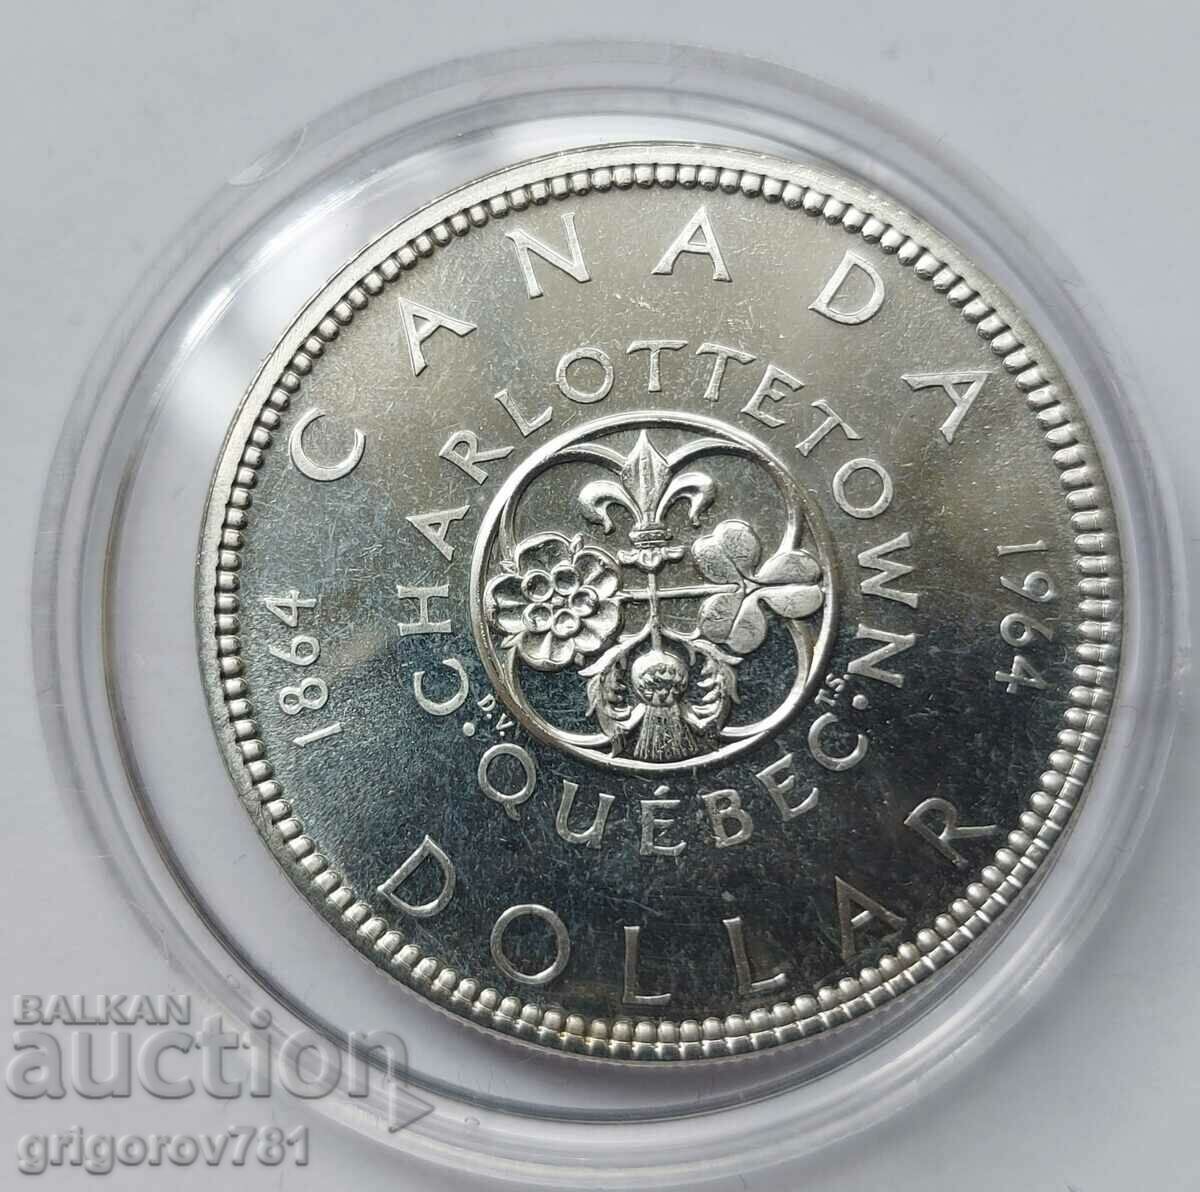 1 dollar silver Canada 1964 - silver coin